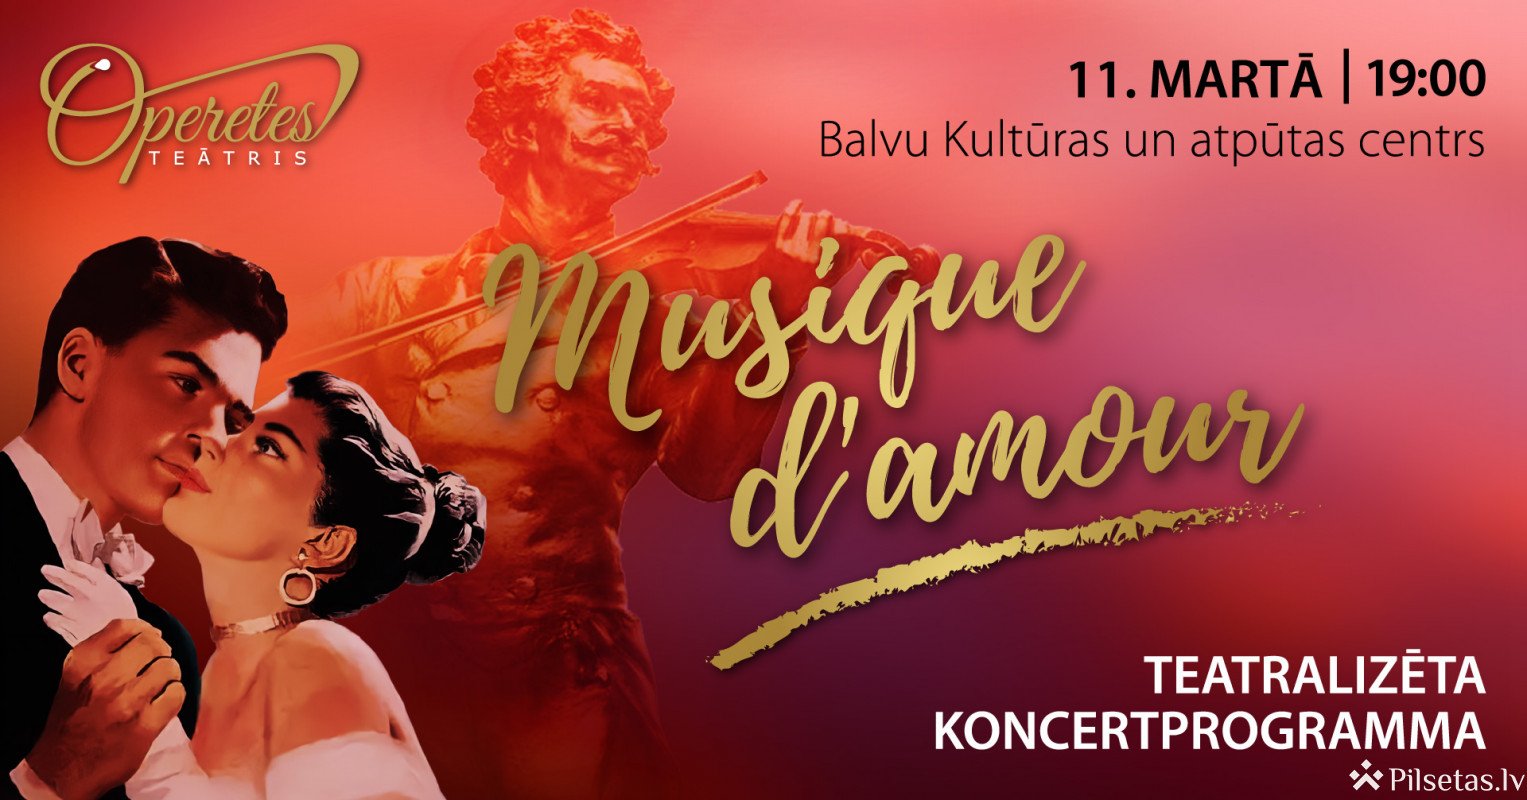 Teatralizēta koncertprogramma "Musique d'amour"